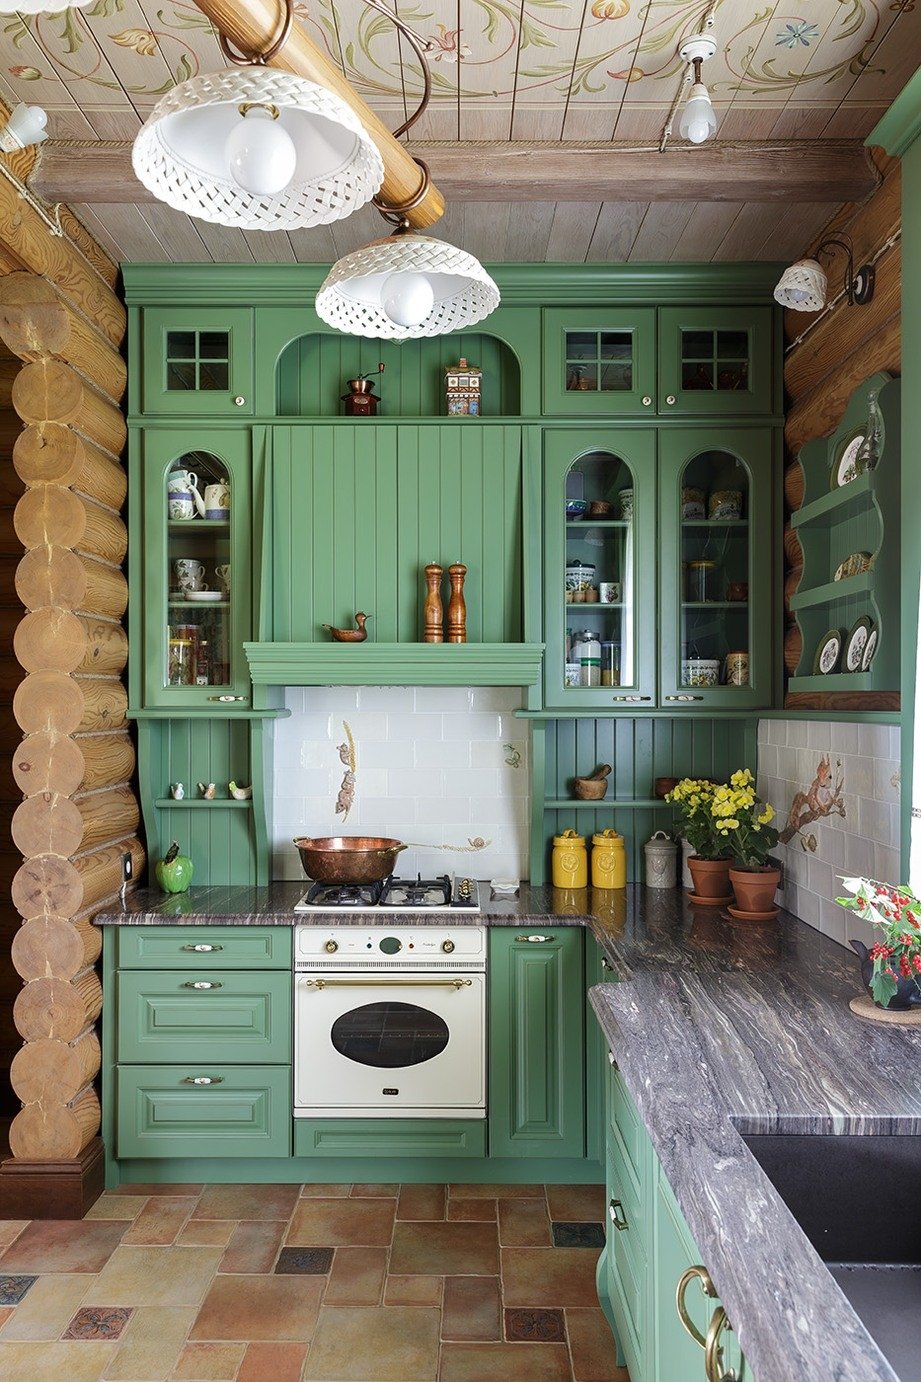 Зеленая кухня в бревенчатом доме